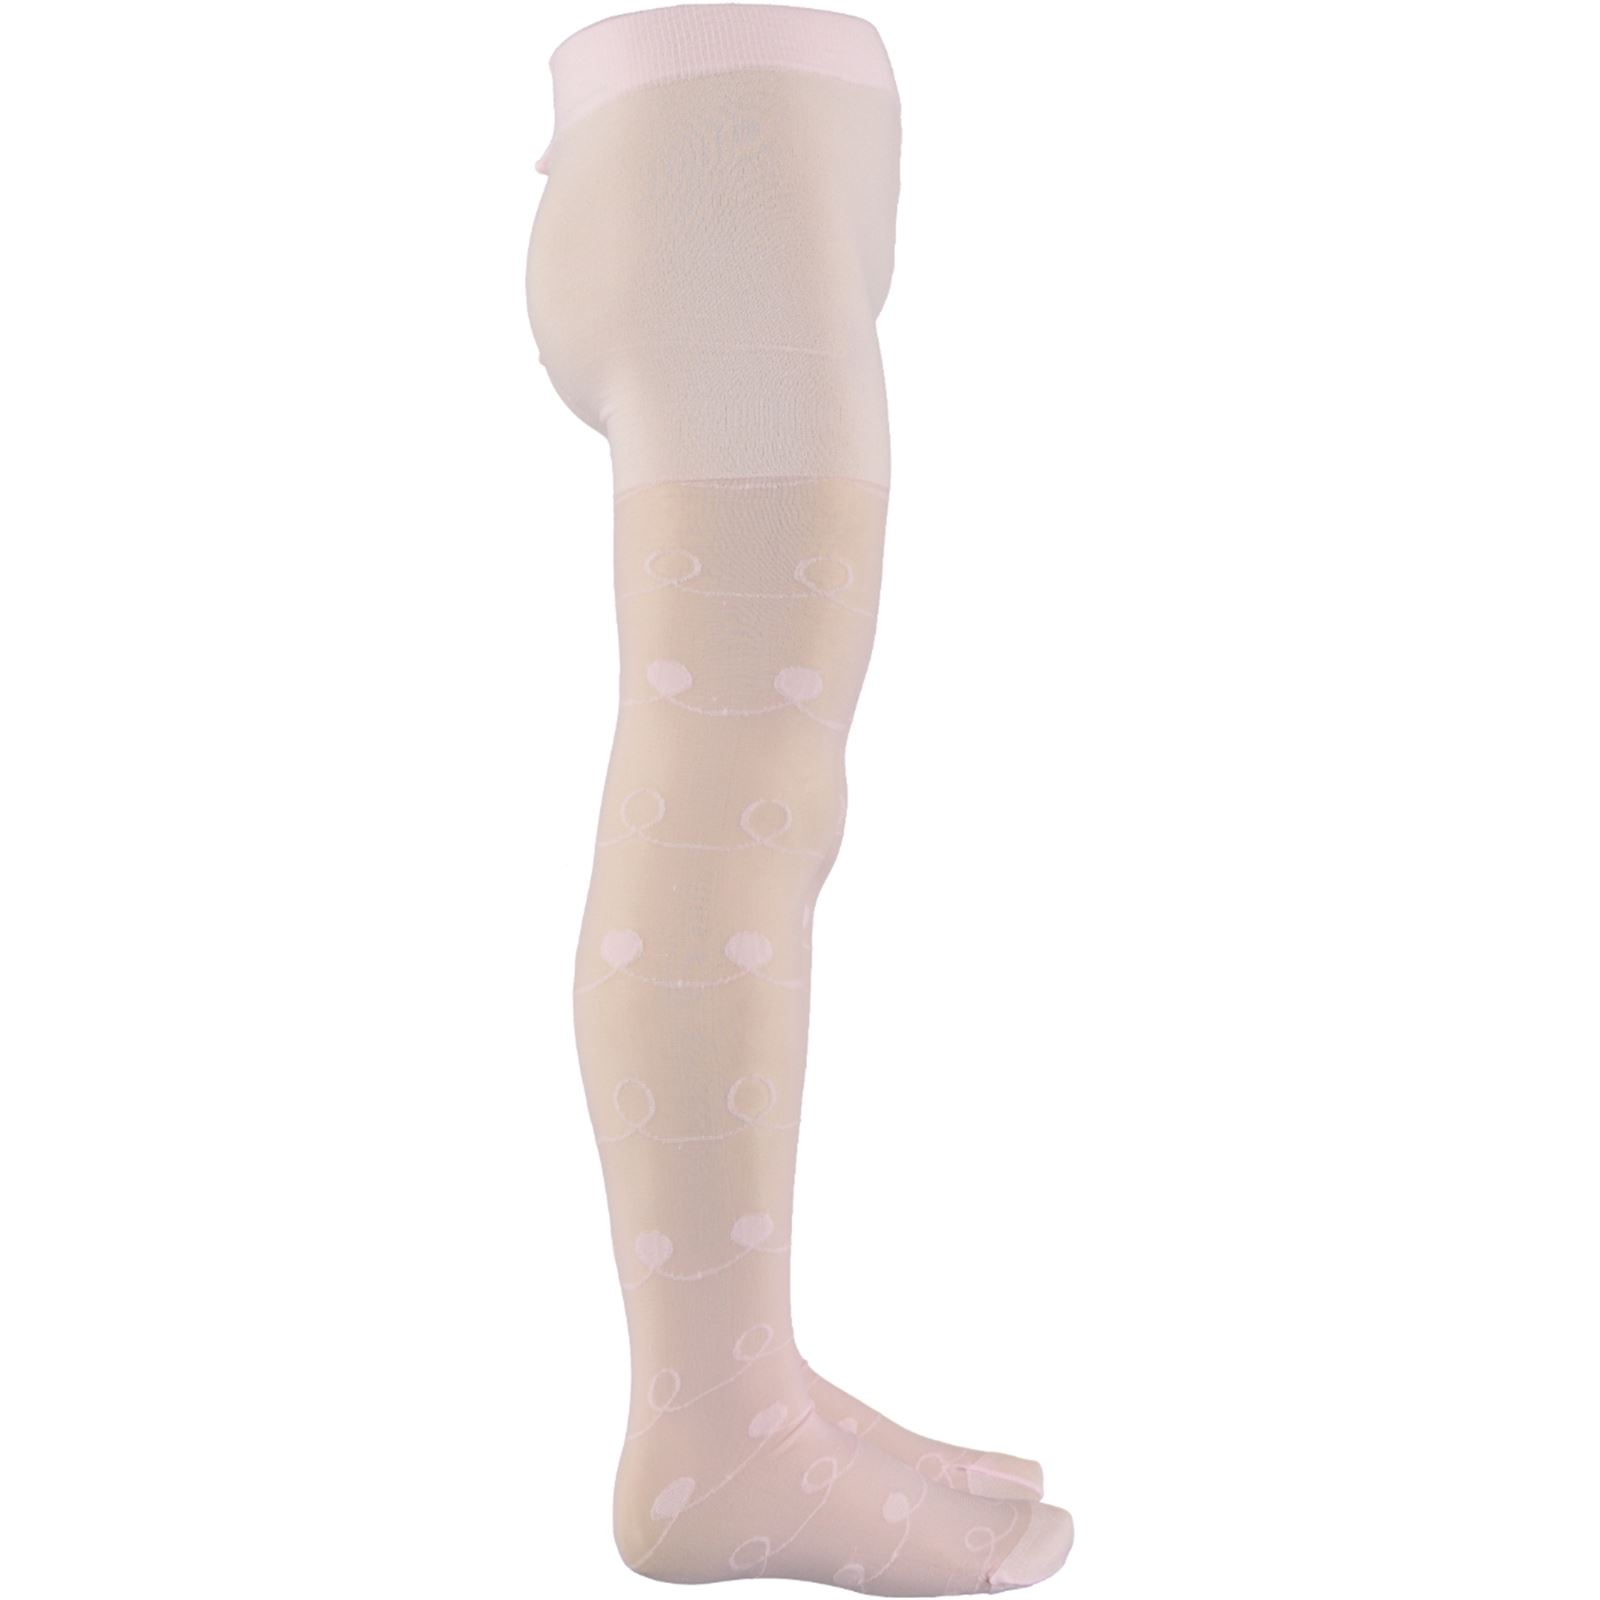 Bella Calze Kız Çocuk Külotlu Çorap 2-11 Yaş Pembe